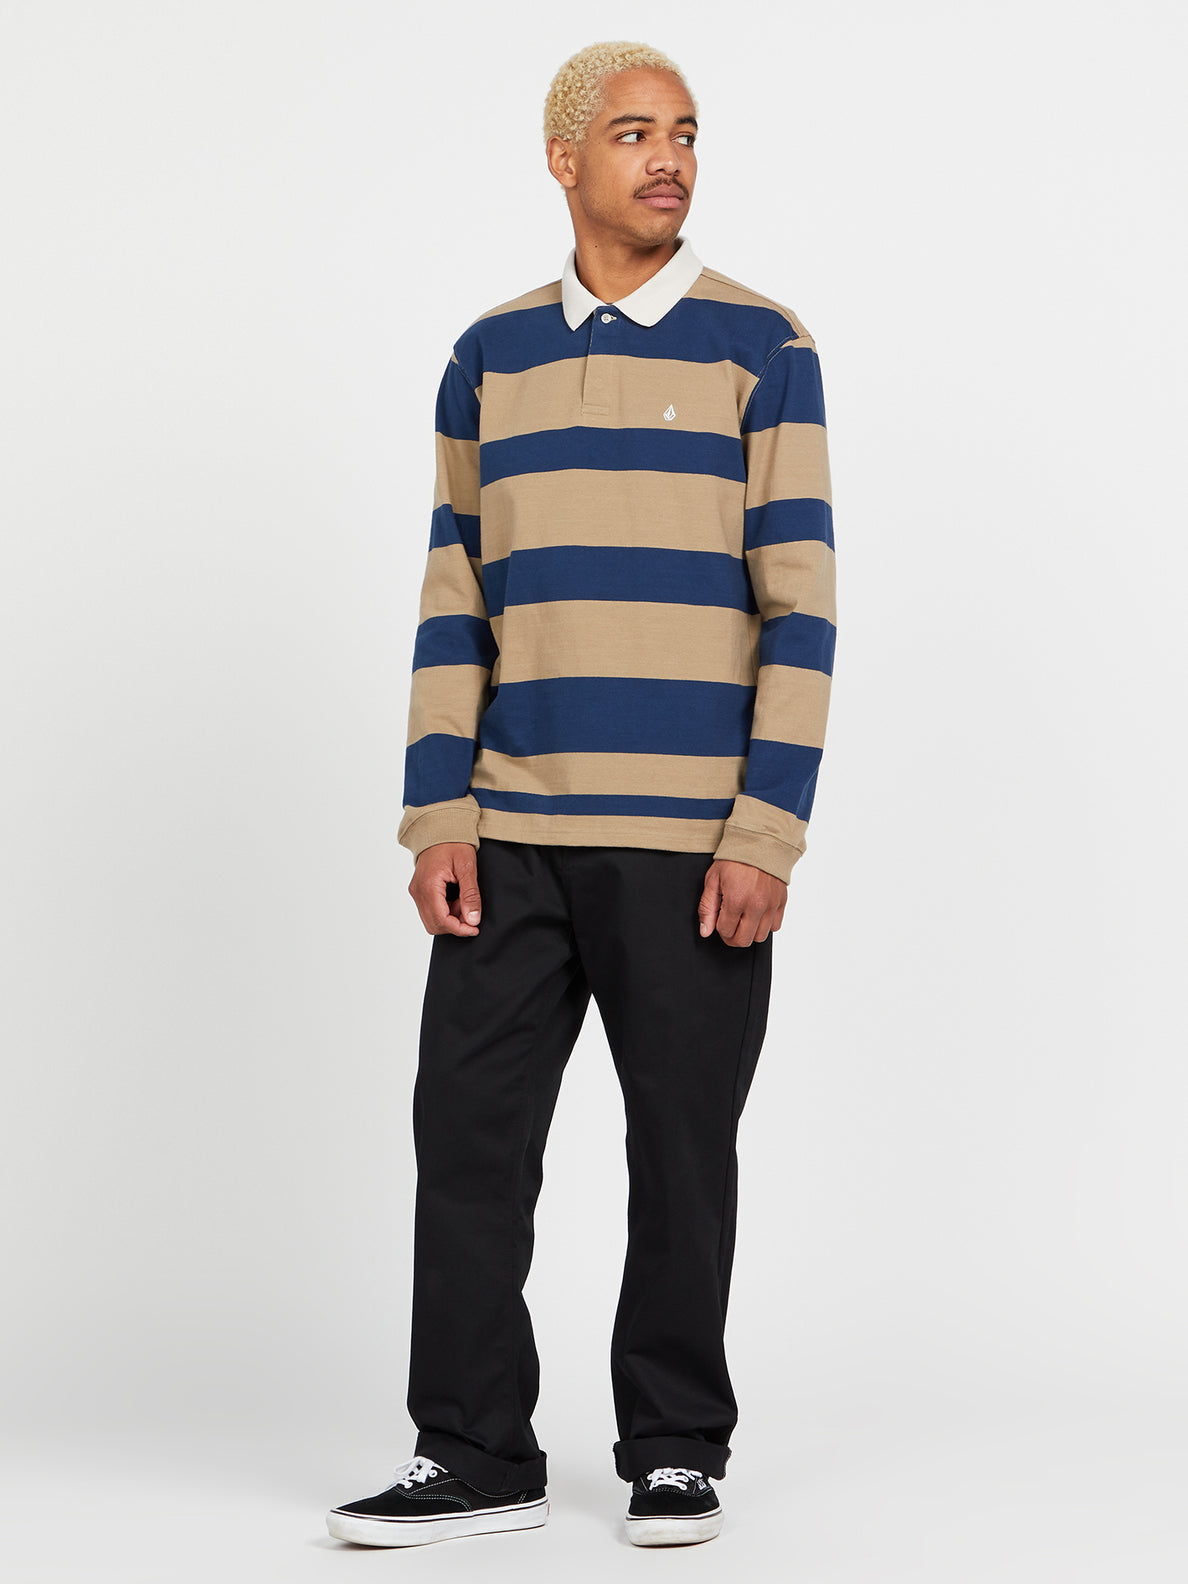 Sumpter Polo Long Sleeve Shirt - Khaki